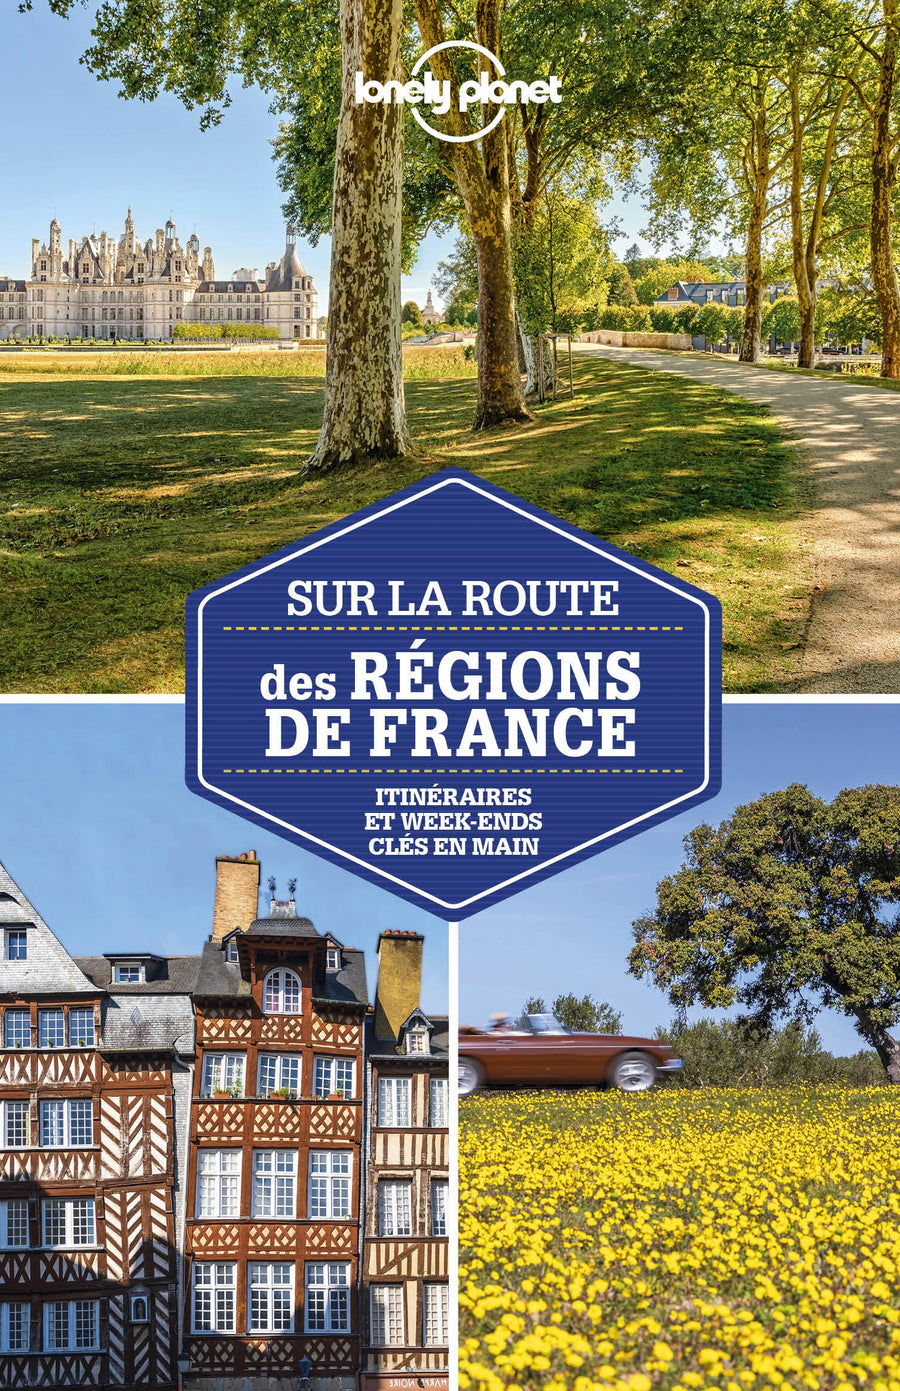 Guide de voyage - Sur la route des régions de France : les meilleurs itinéraires | Lonely Planet guide de voyage Lonely Planet 